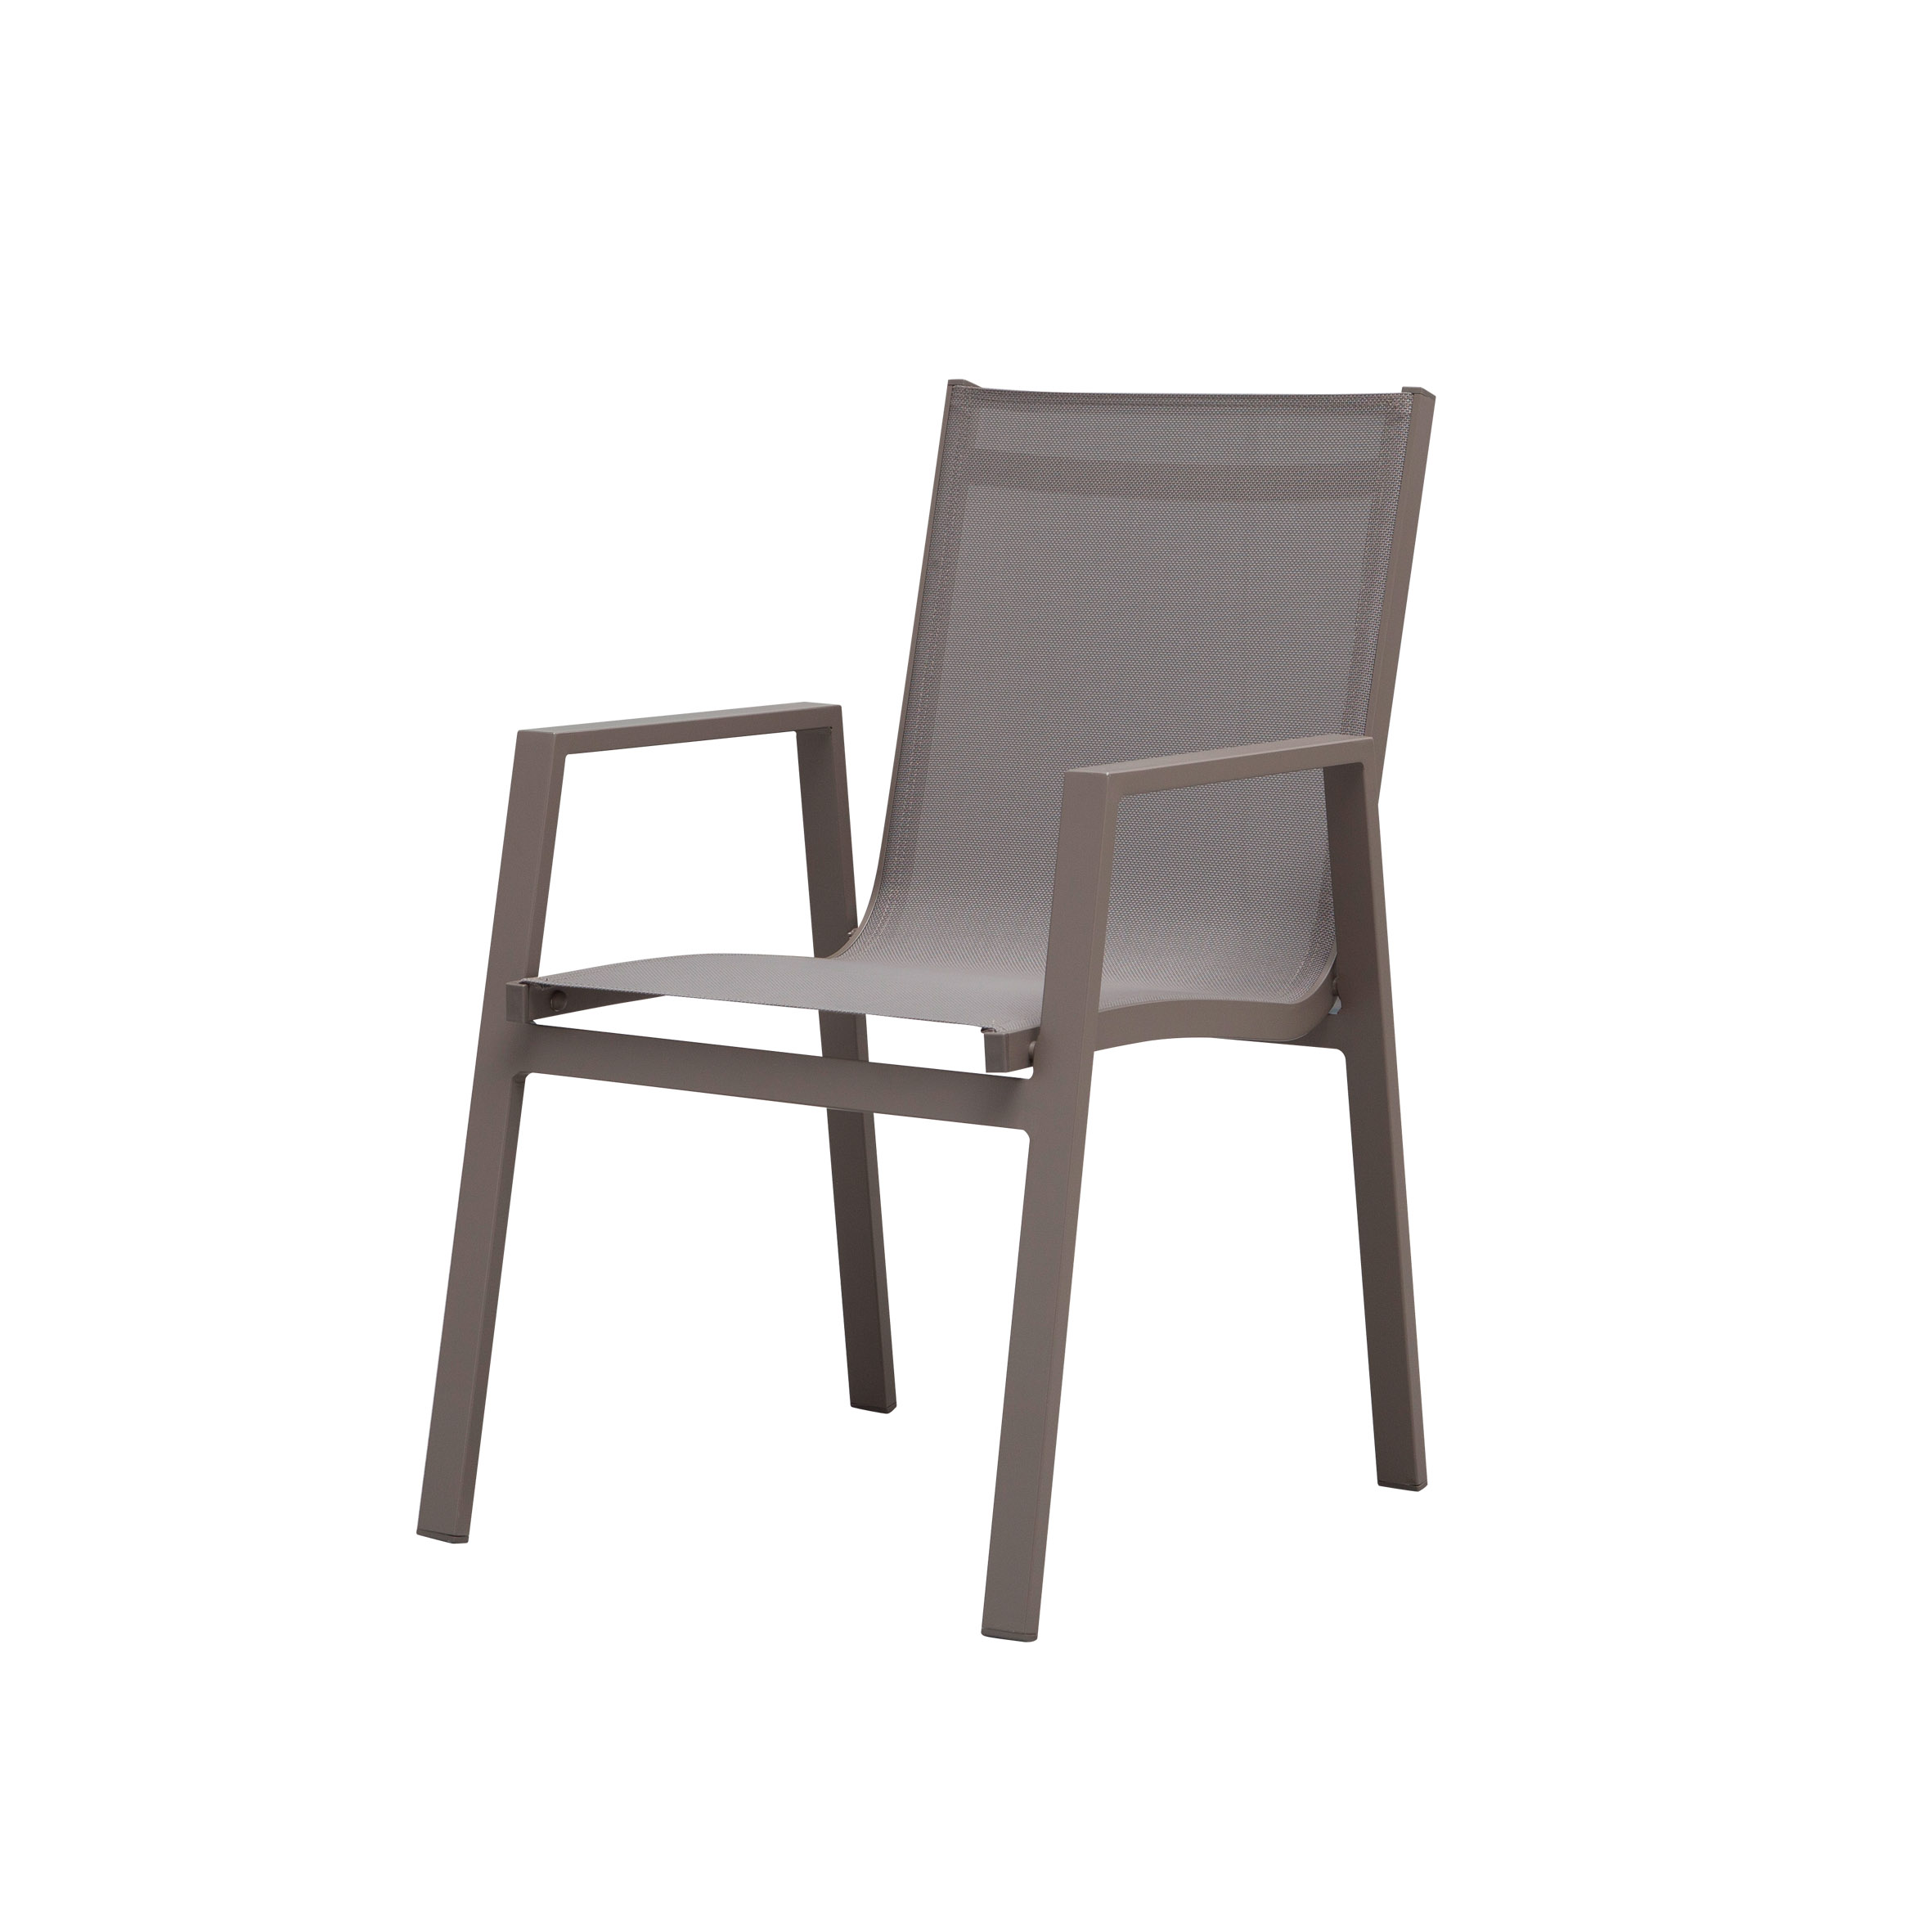 Белоснежный текстильный обеденный стул S6